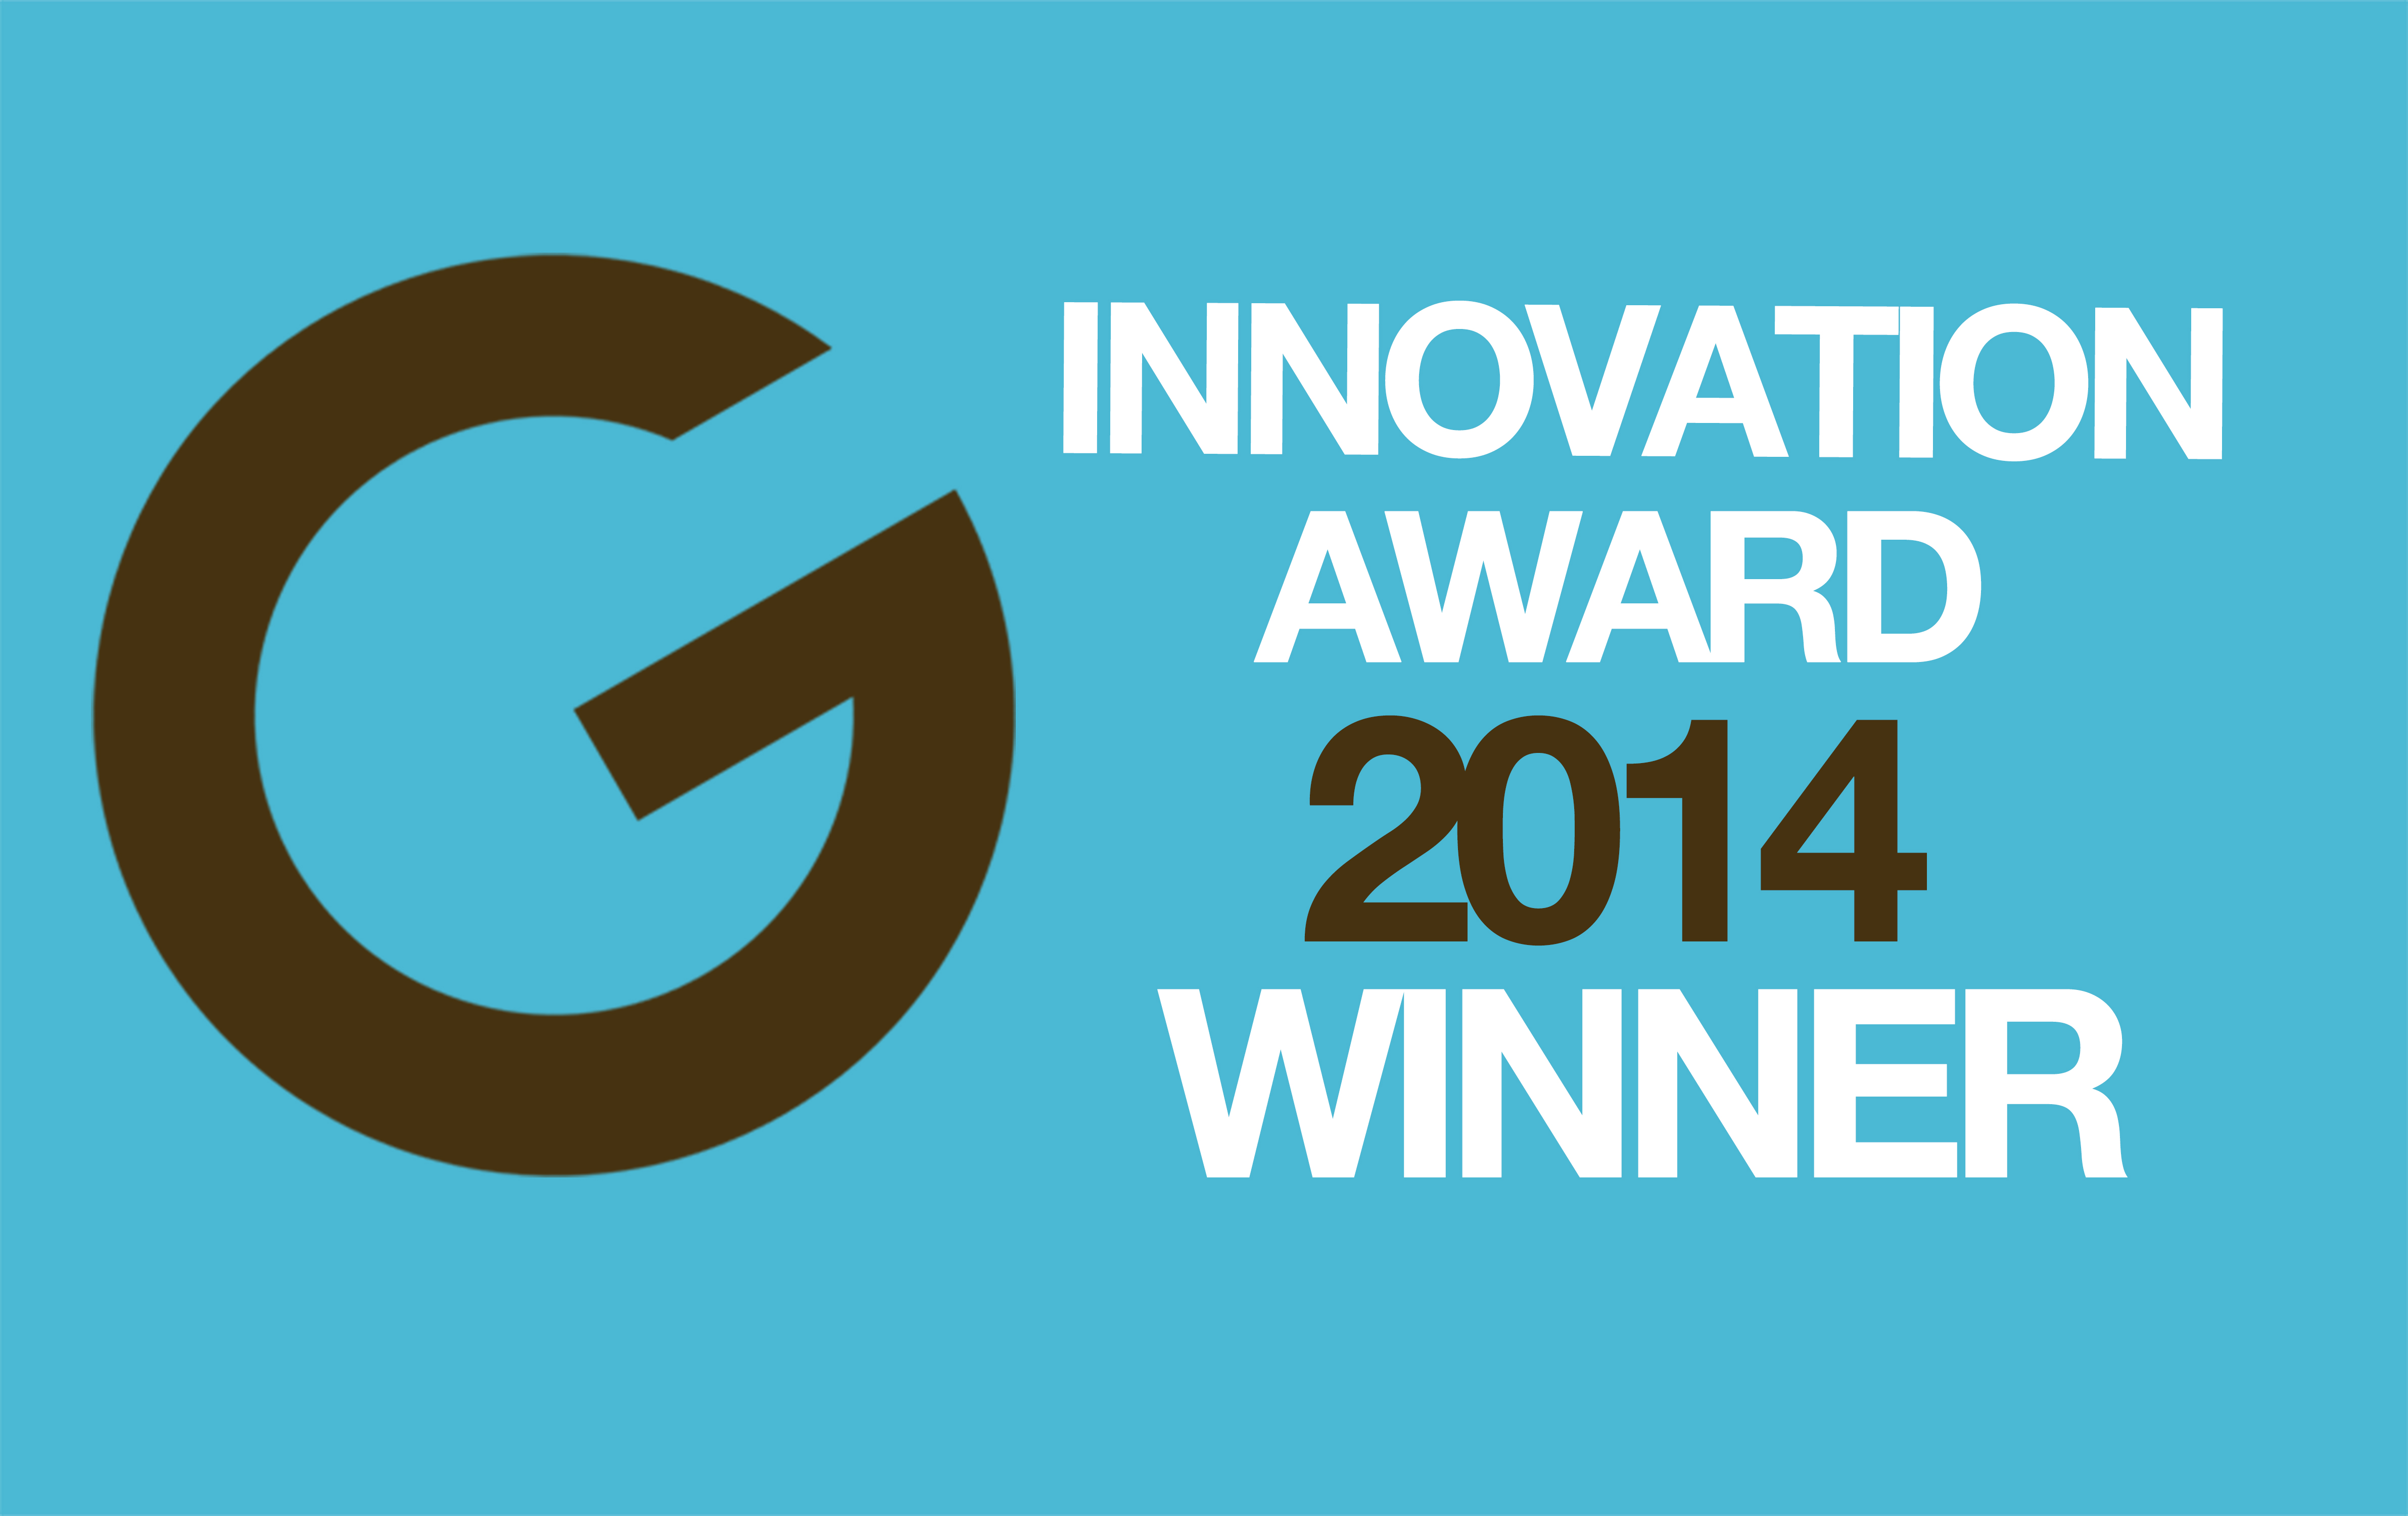 Innovation Award Winner